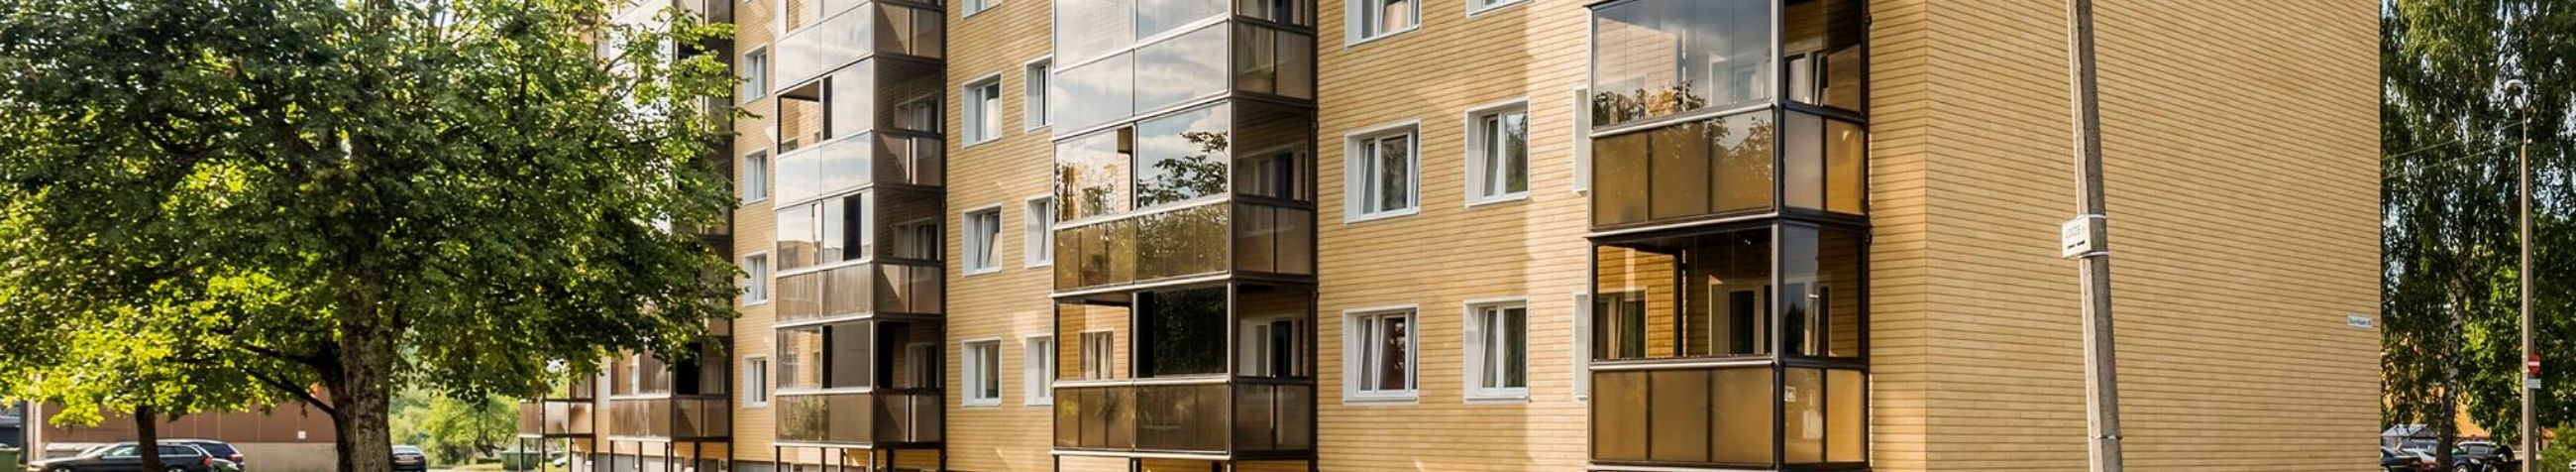 Oleme Eesti juhtiv korterelamute tervikliku rekonstrueerimise ettevõte, kes loob kestvaid lahendusi energia säästmiseks ja elukeskkonna parandamiseks.